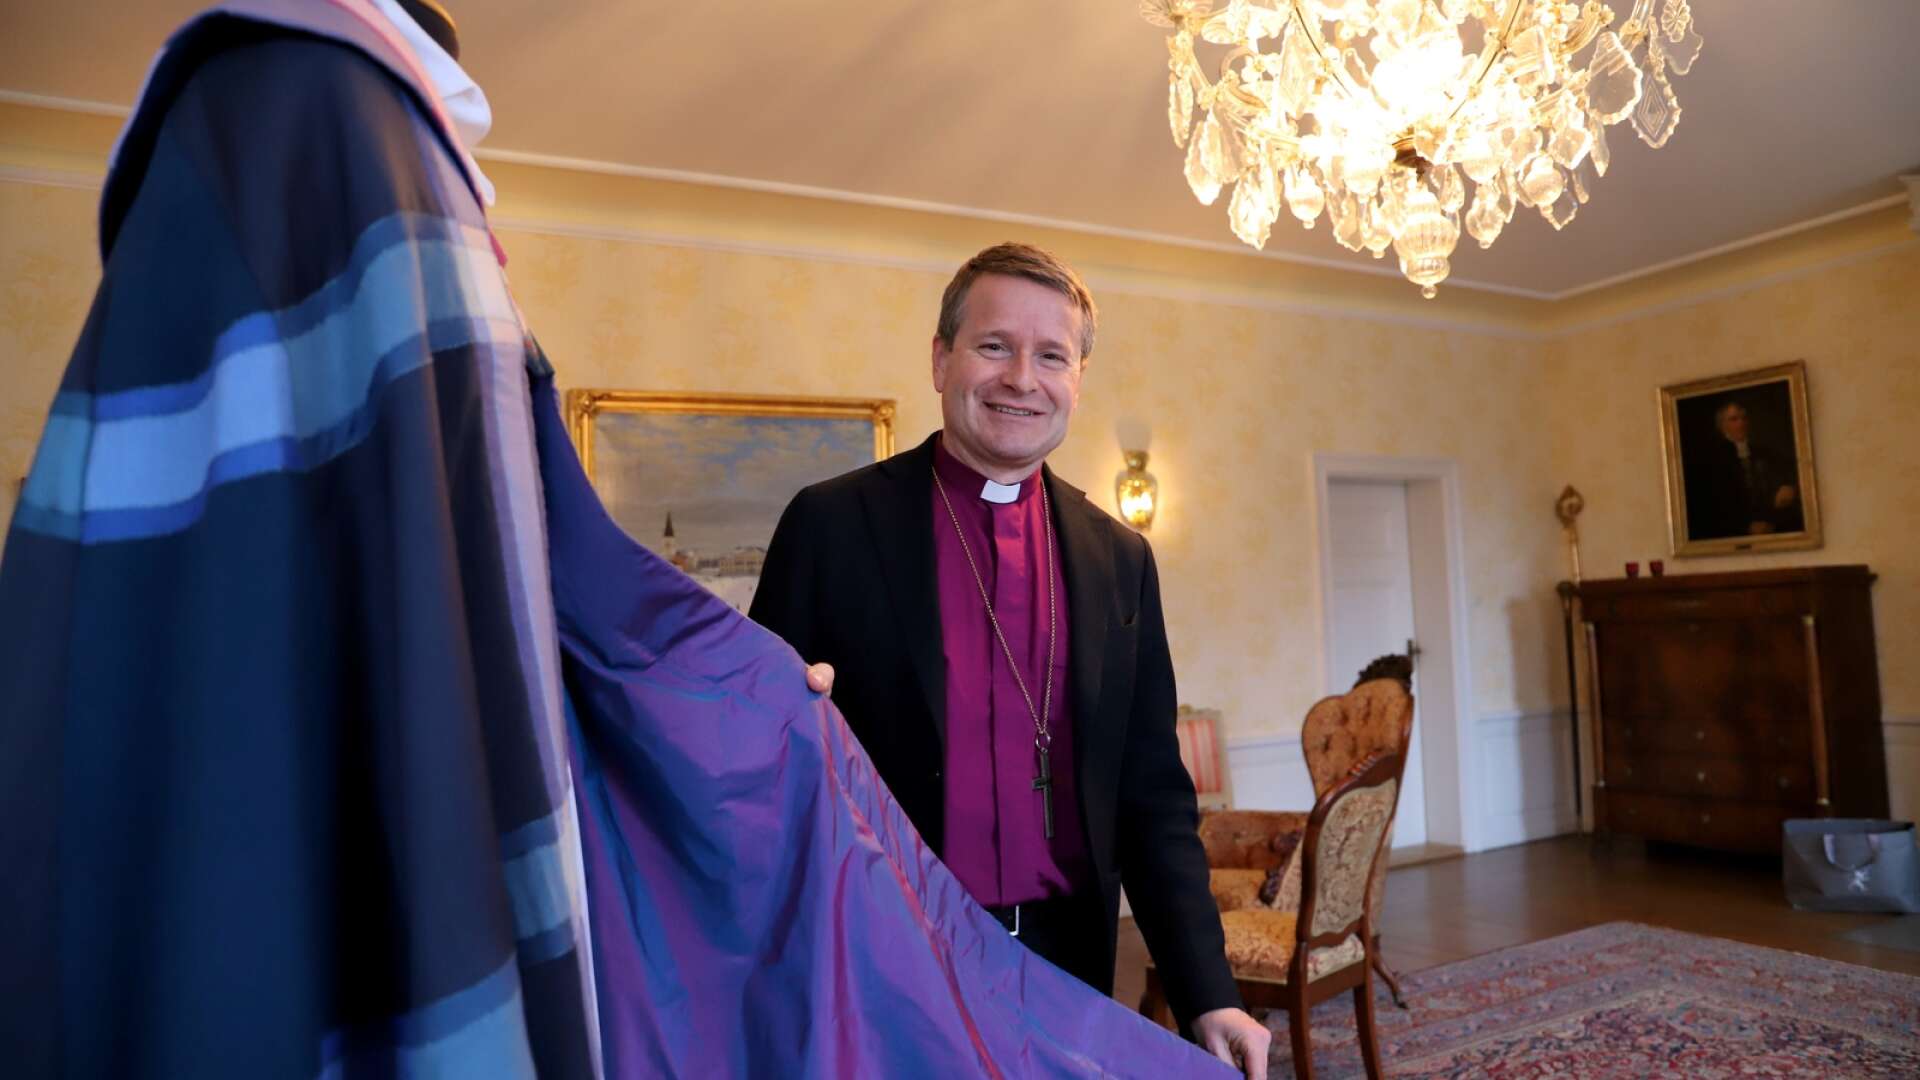 Biskopen Sören Dalevi inviger sin nya biskopskåpa i Domkyrkan vid en festmässa på söndag. Den är handsydd i ylle och siden och har många personliga och religiösa symboler.